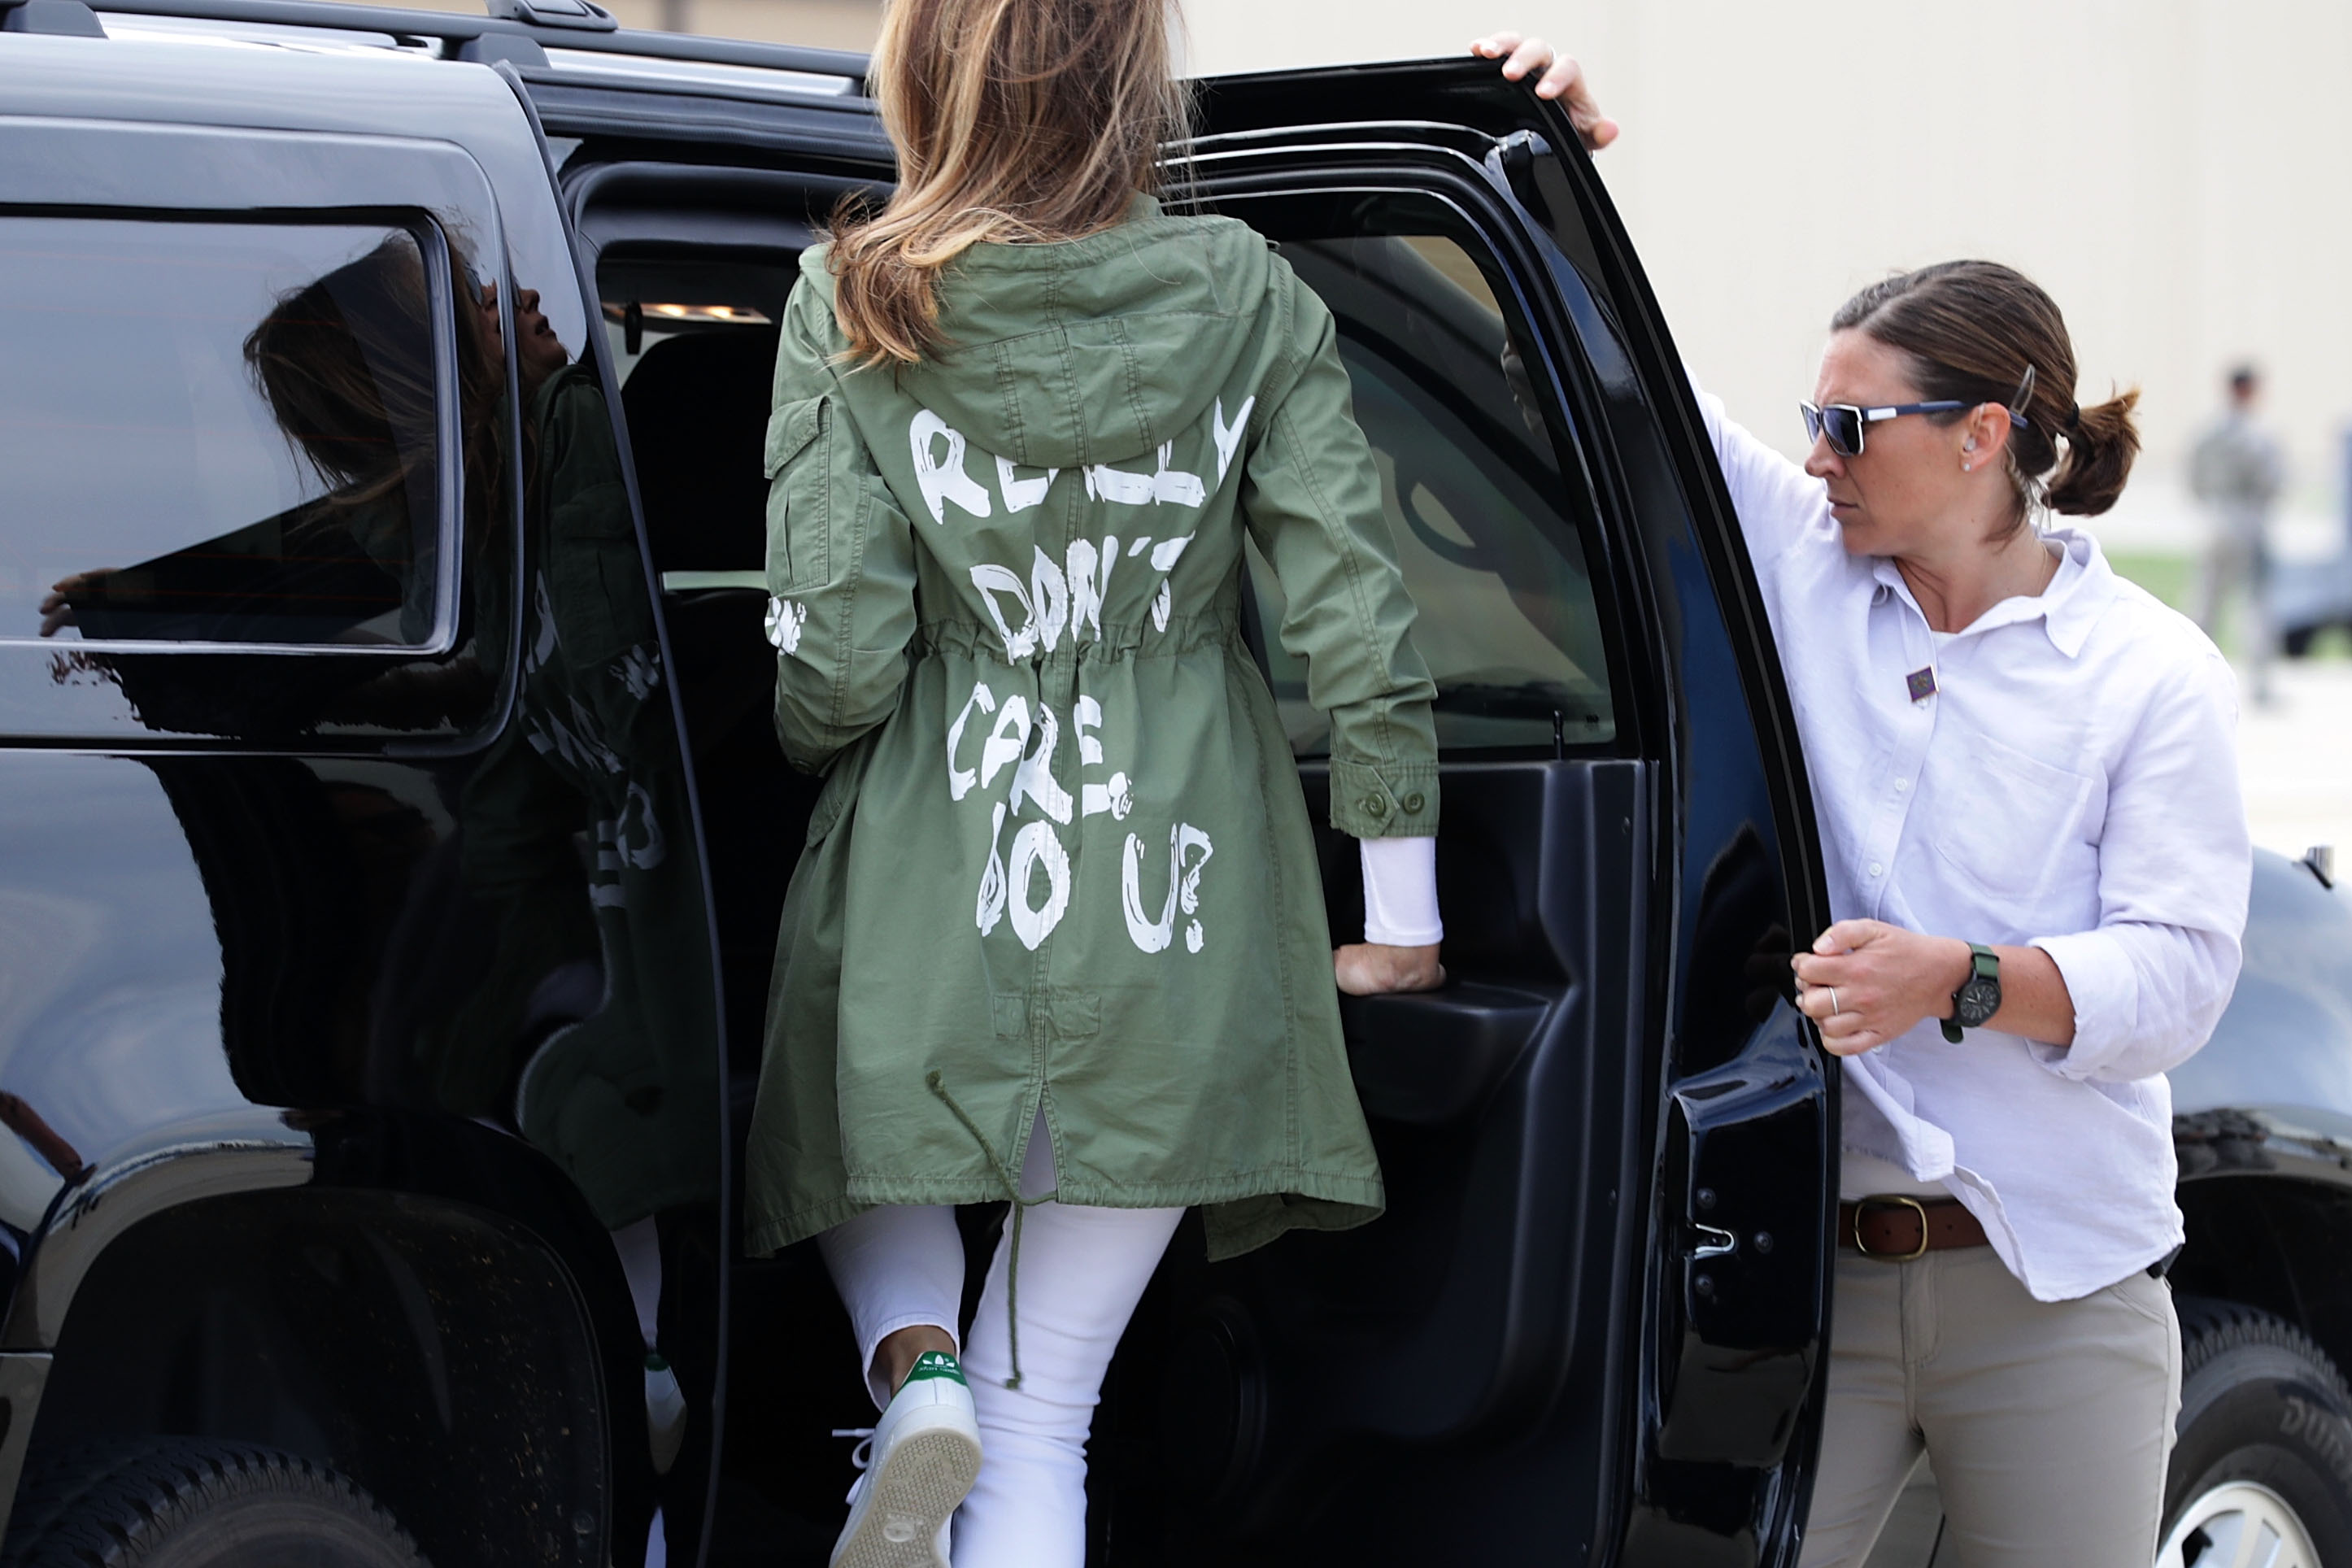 Когато бе попитана какво послание отправя дрехата на първата дама, говорителката Стефани Гришам каза: Това е яке. Няма скрито послание. Надявам се, че след днешната важна визита в Тексас, медиите няма да изберат да се фокусират върху гардероба й.